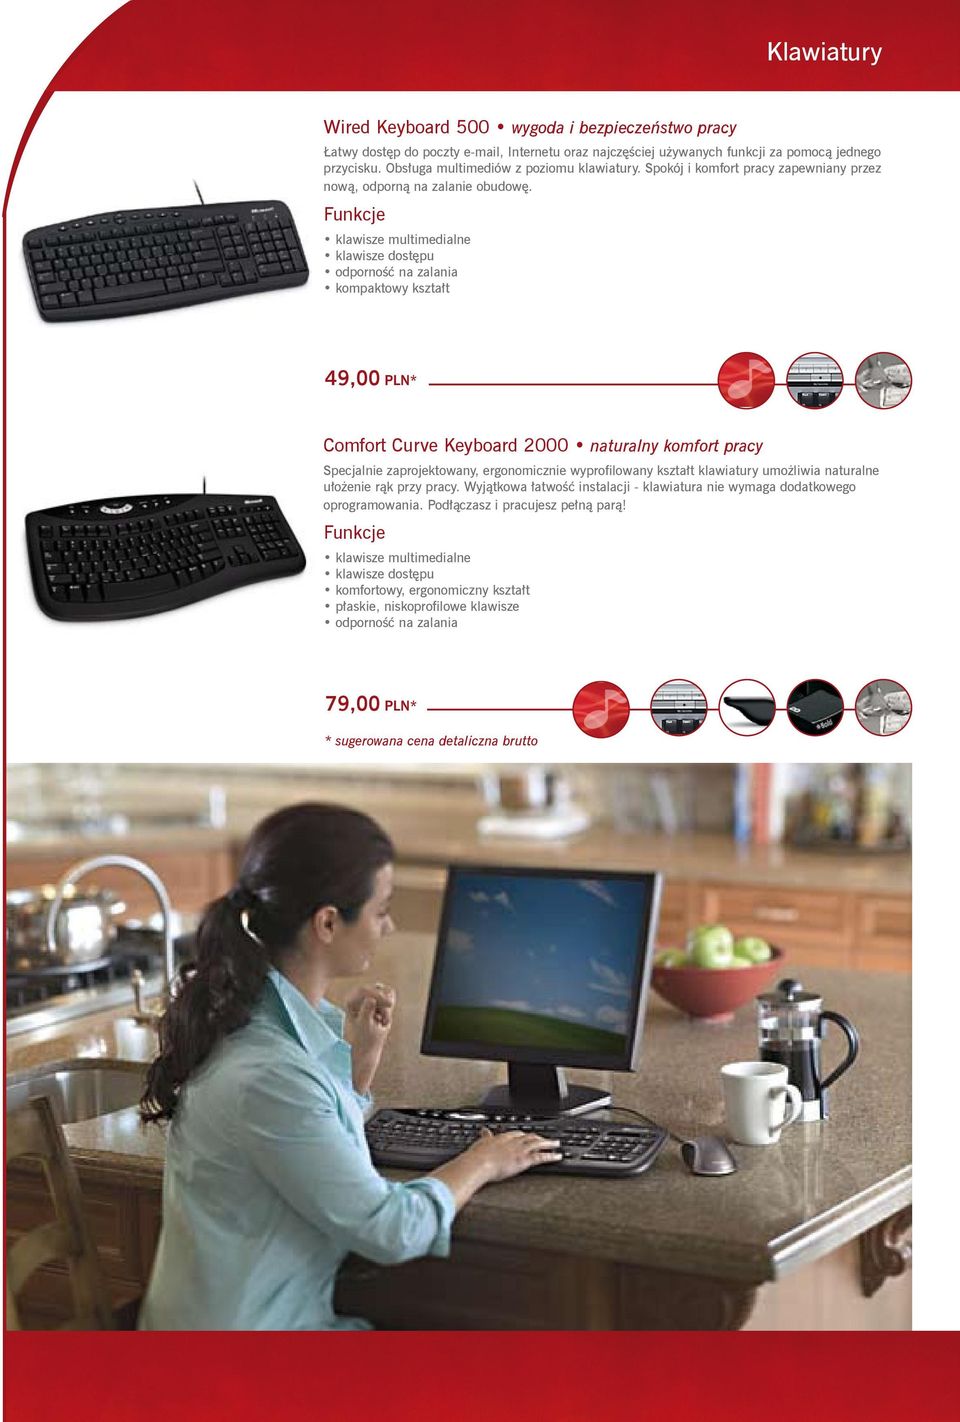 klawisze dostępu odporność na zalania kompaktowy kształt 49,00 PLN* Comfort Curve Keyboard 2000 naturalny komfort pracy Specjalnie zaprojektowany, ergonomicznie wyprofilowany kształt